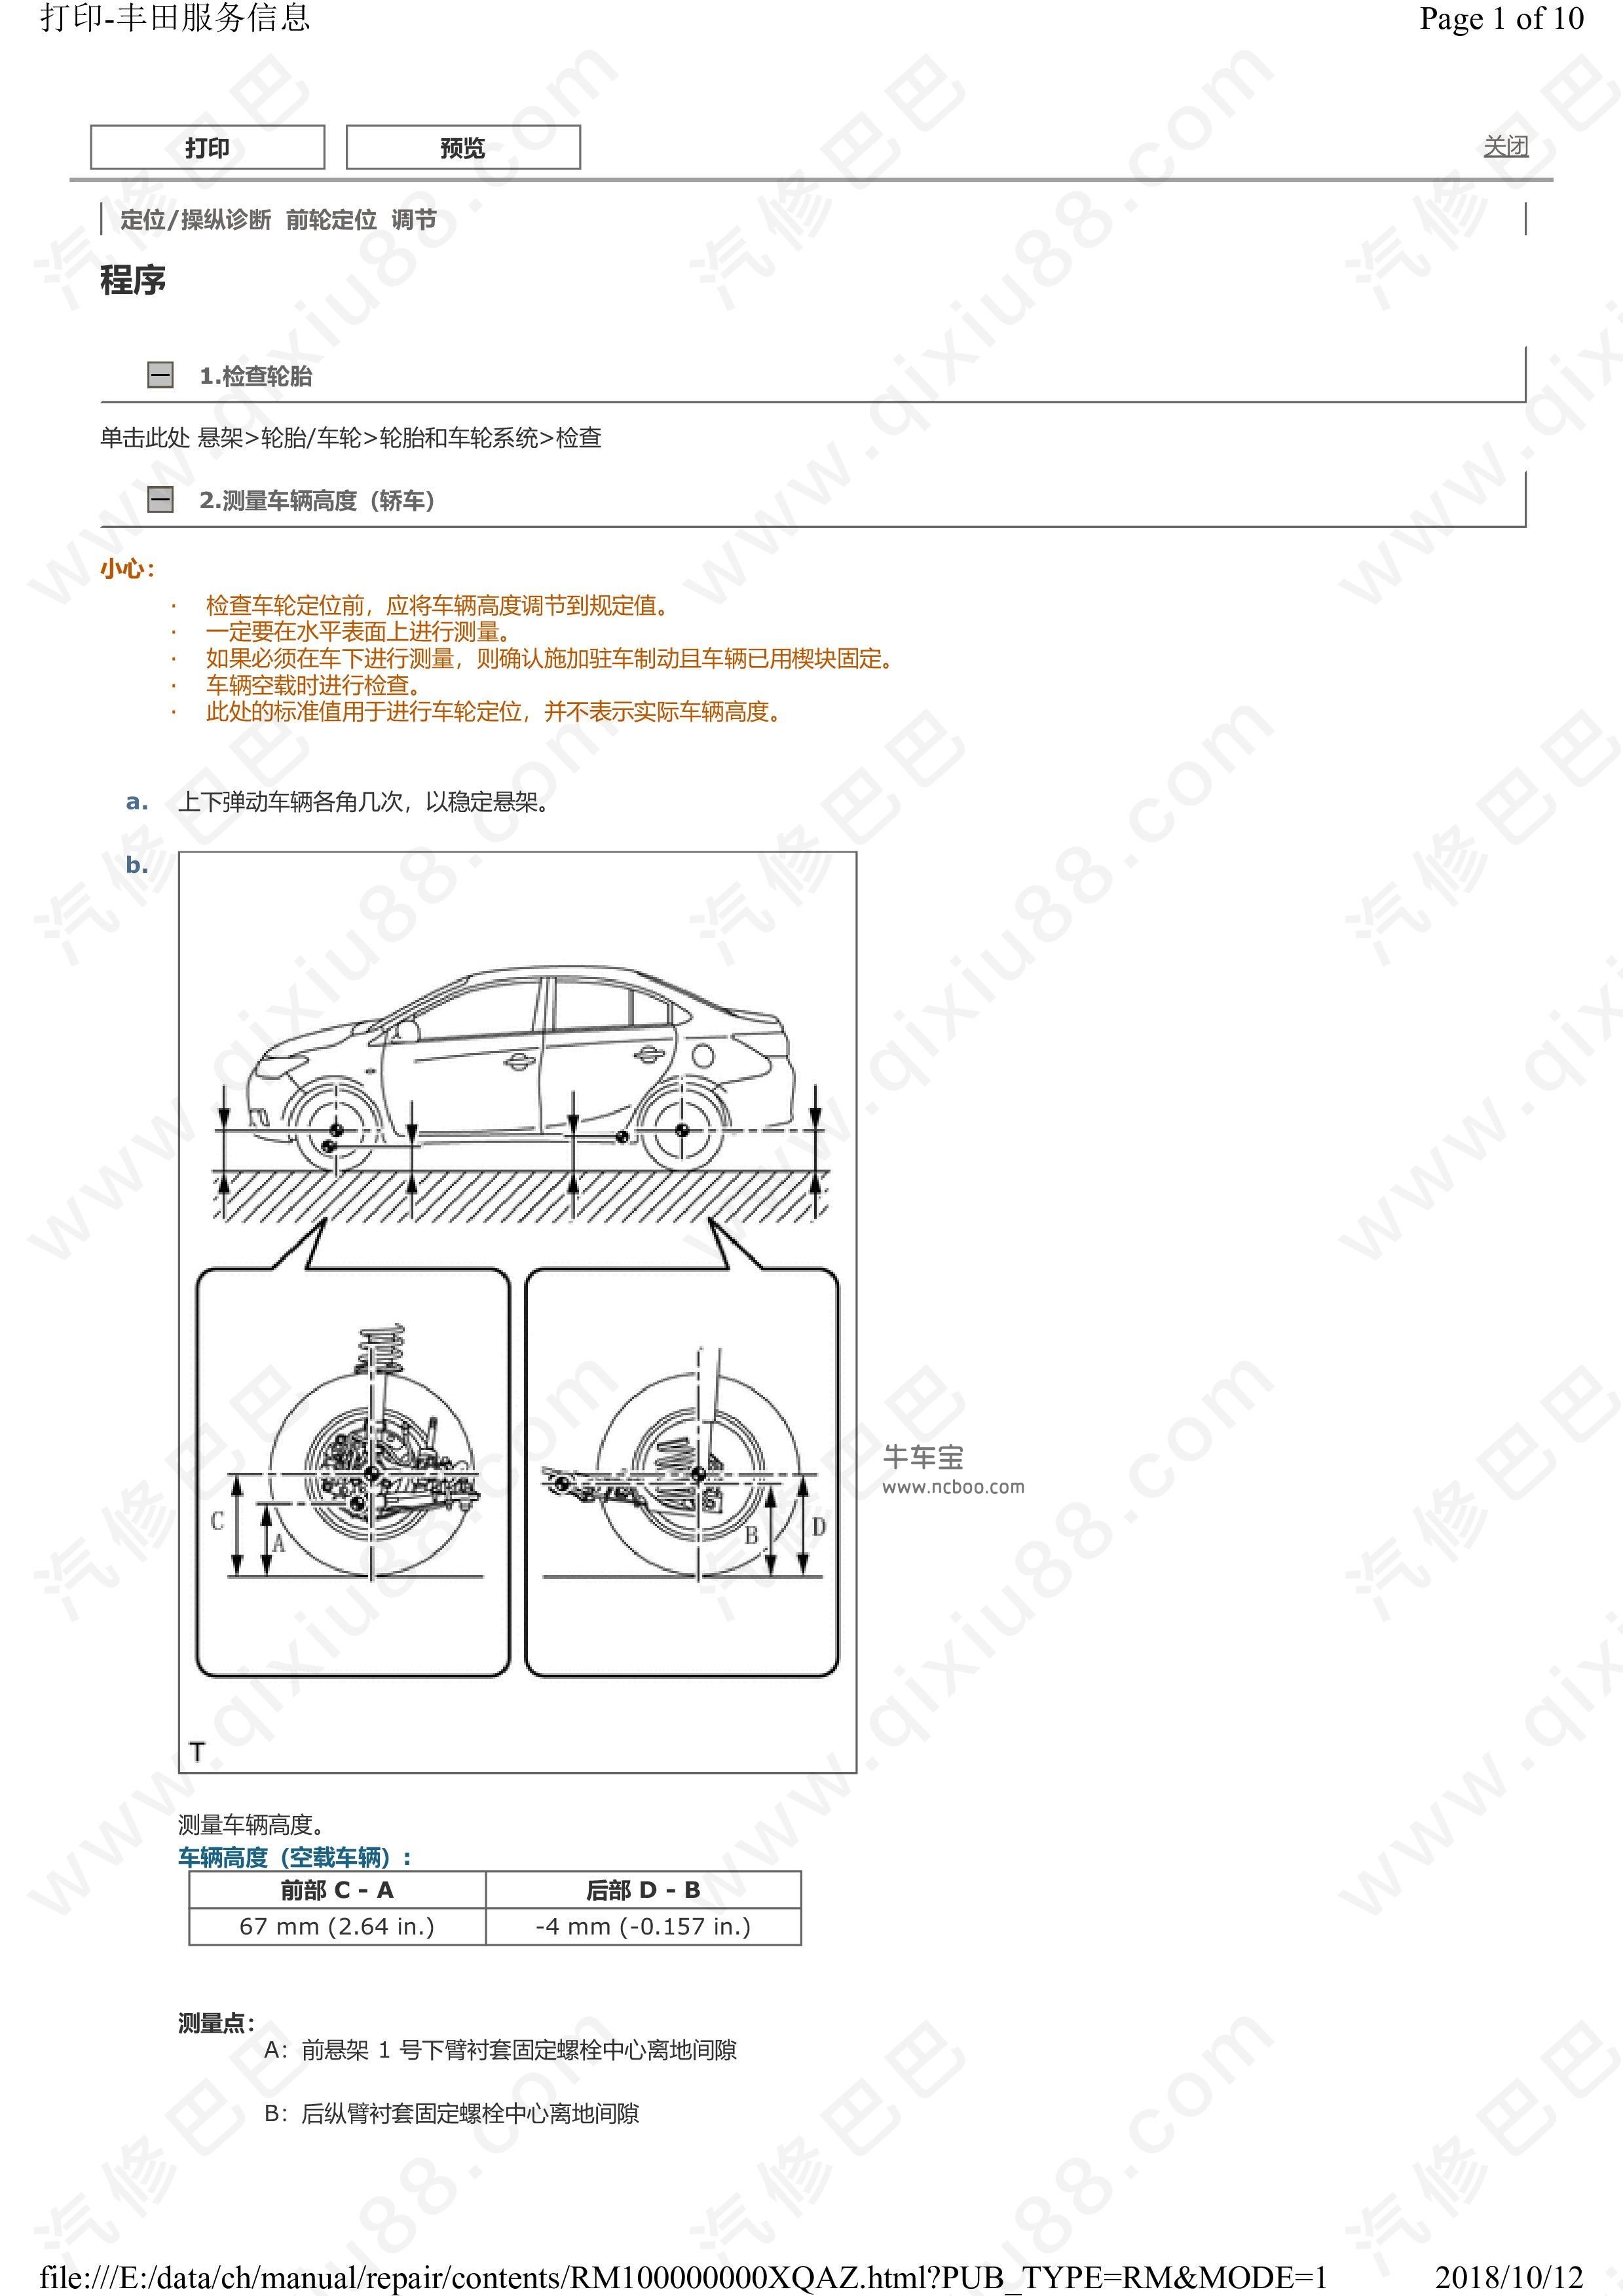 丰田威驰悬架系统维修手册资料 前轮定位 减振器拆卸